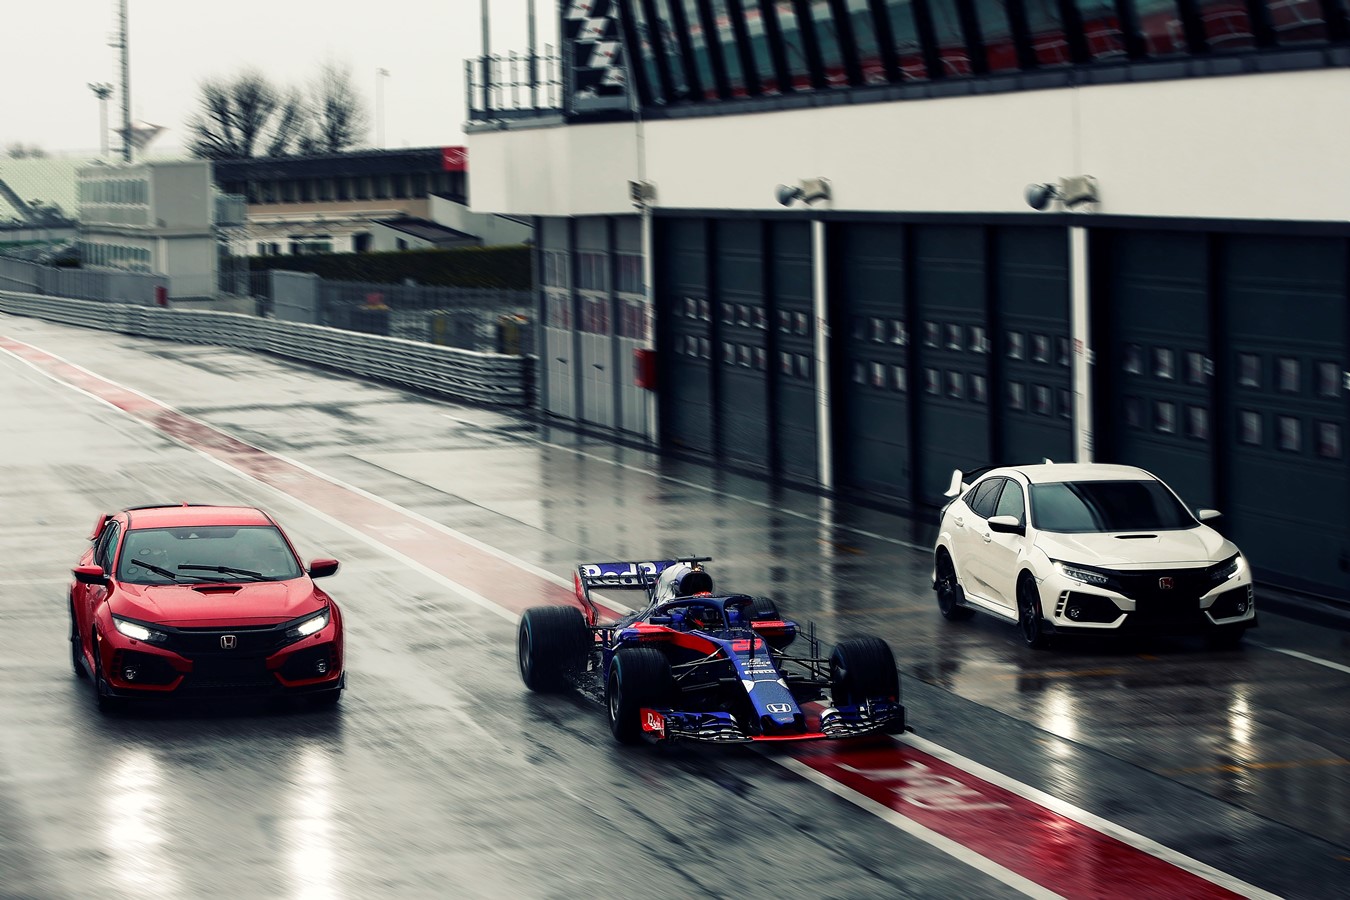 Civic Type R har valts av Formel 1-stallet Red Bull Toro Rosso Hondas tävlingsförare